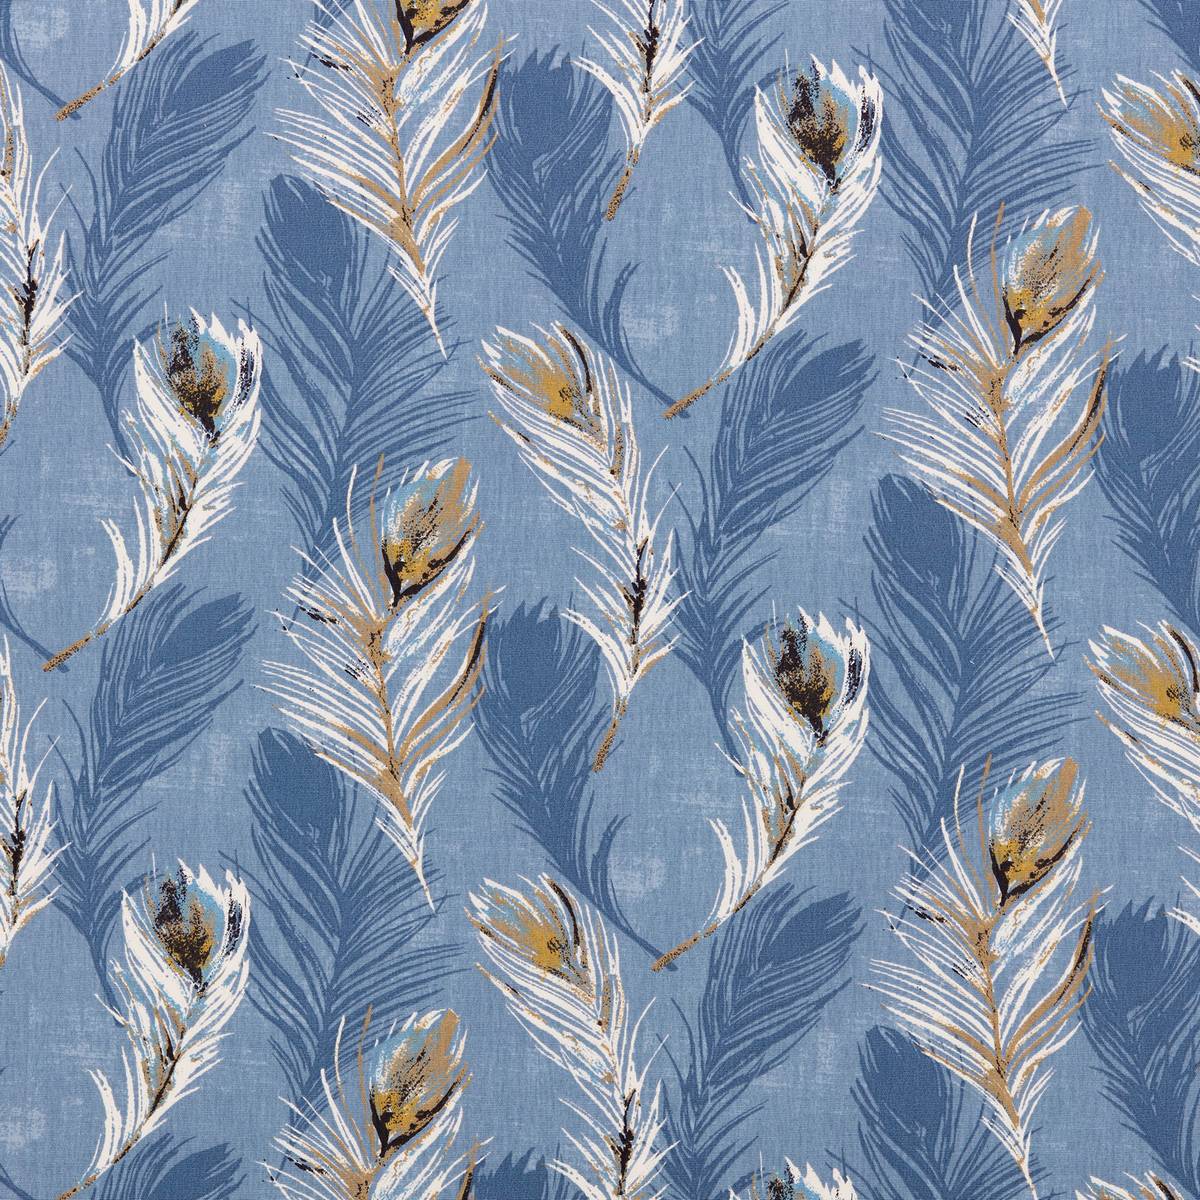 Kiata Danube Fabric by Ashley Wilde